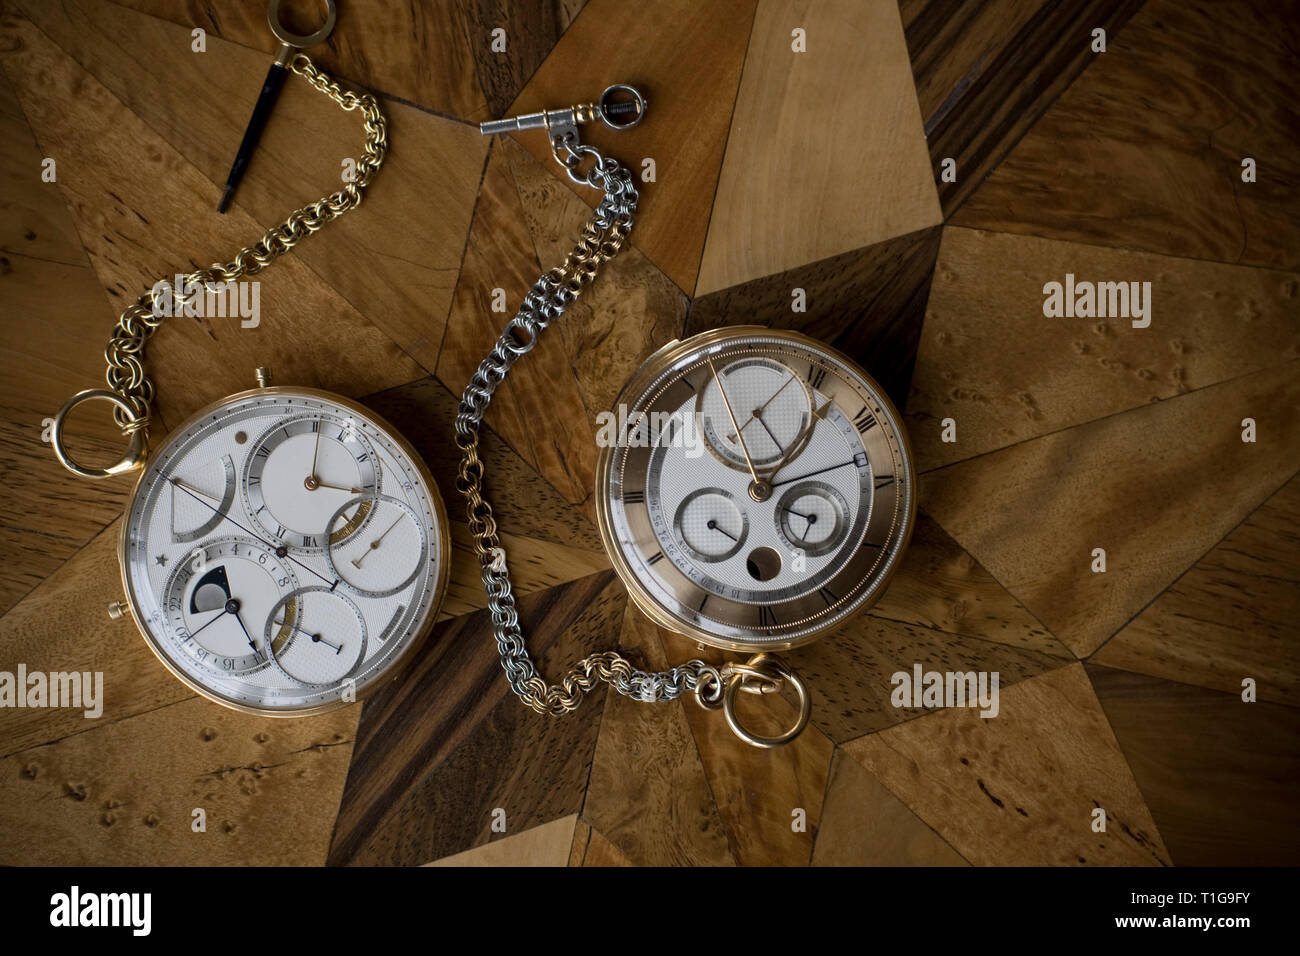 Deux montres faites par le maître horloger George Daniels dans son atelier  dans le parc de sa maison à Ramsey, Ile de Man, y compris celui de gauche  qui commémore l'alunissage de